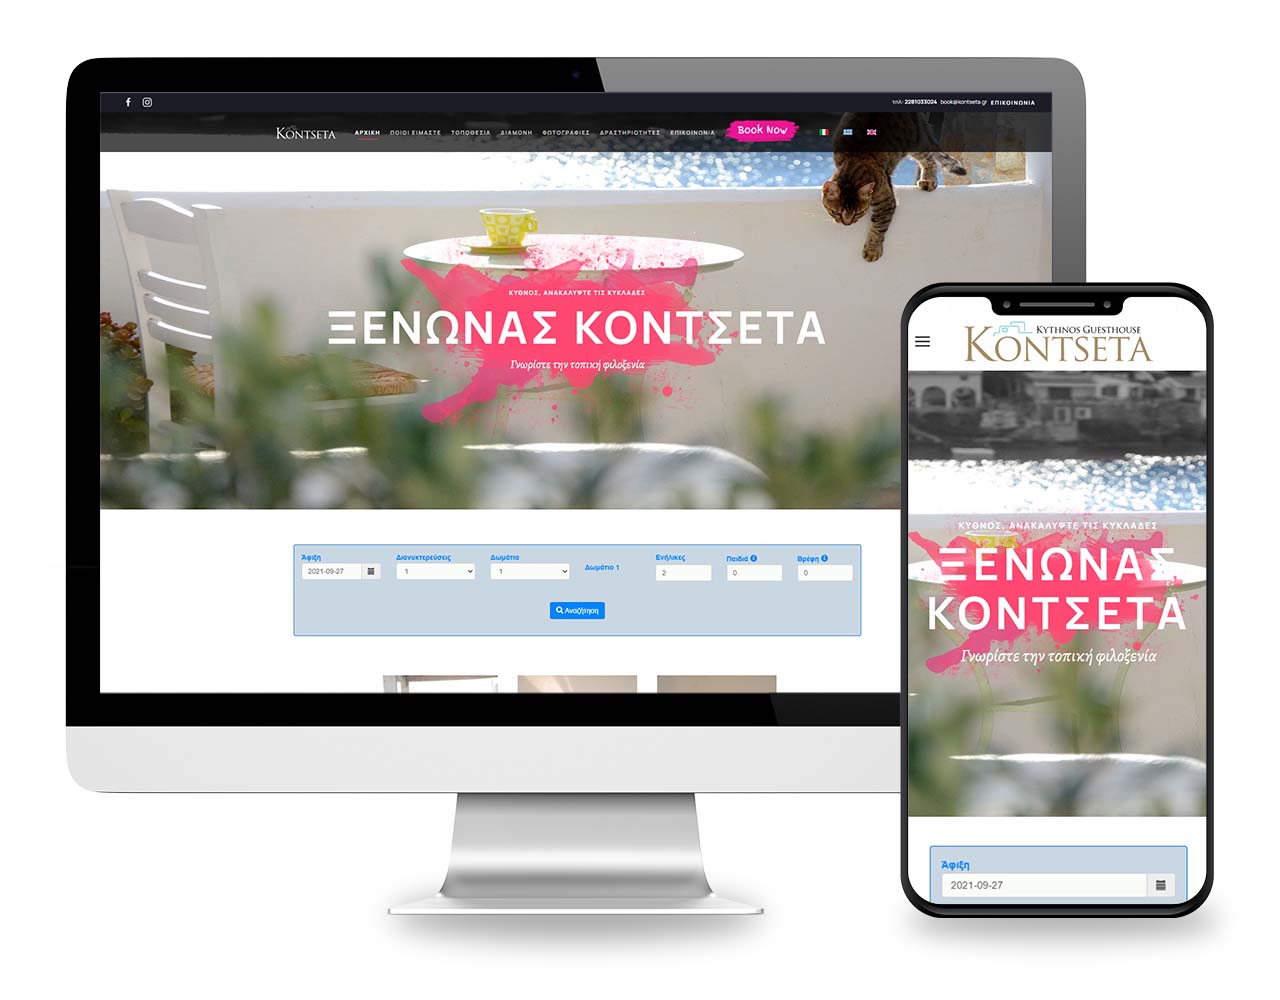 Ιστοσελίδα Kontseta - οικογενειακός ξενώνας στο νησί της Κύθνου